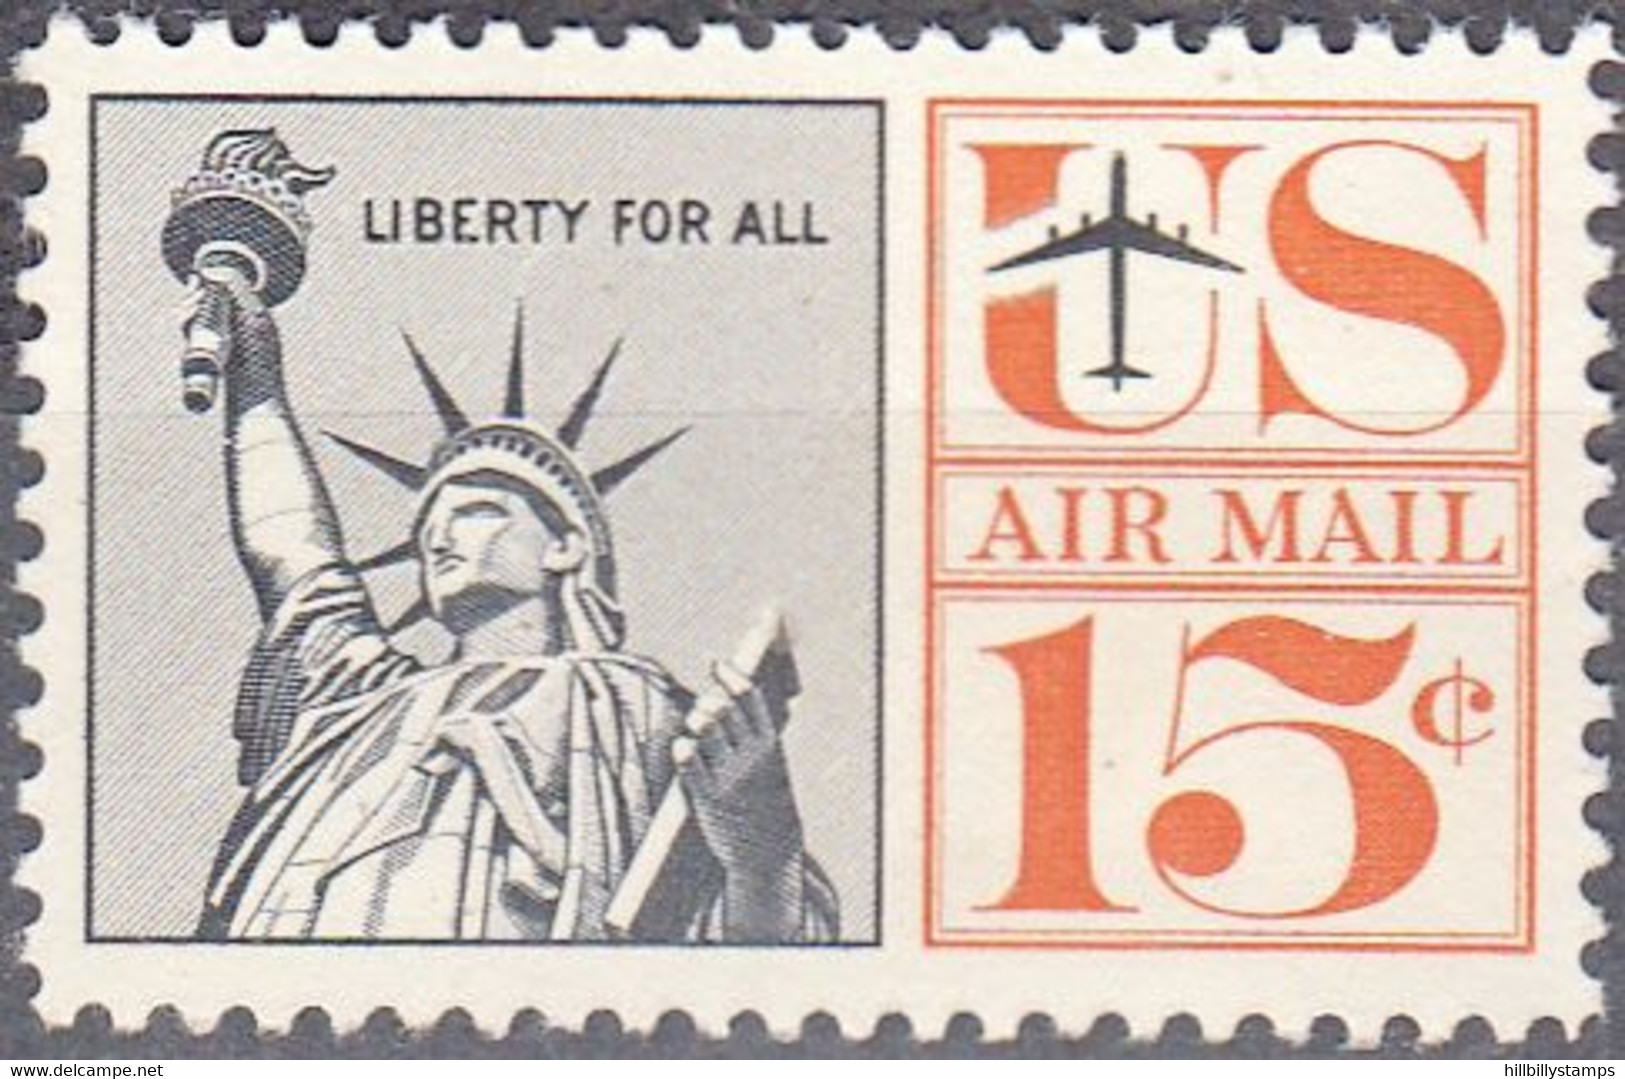 UNITED STATES    SCOTT NO C63  MNH   YEAR  1961 - 2b. 1941-1960 Unused